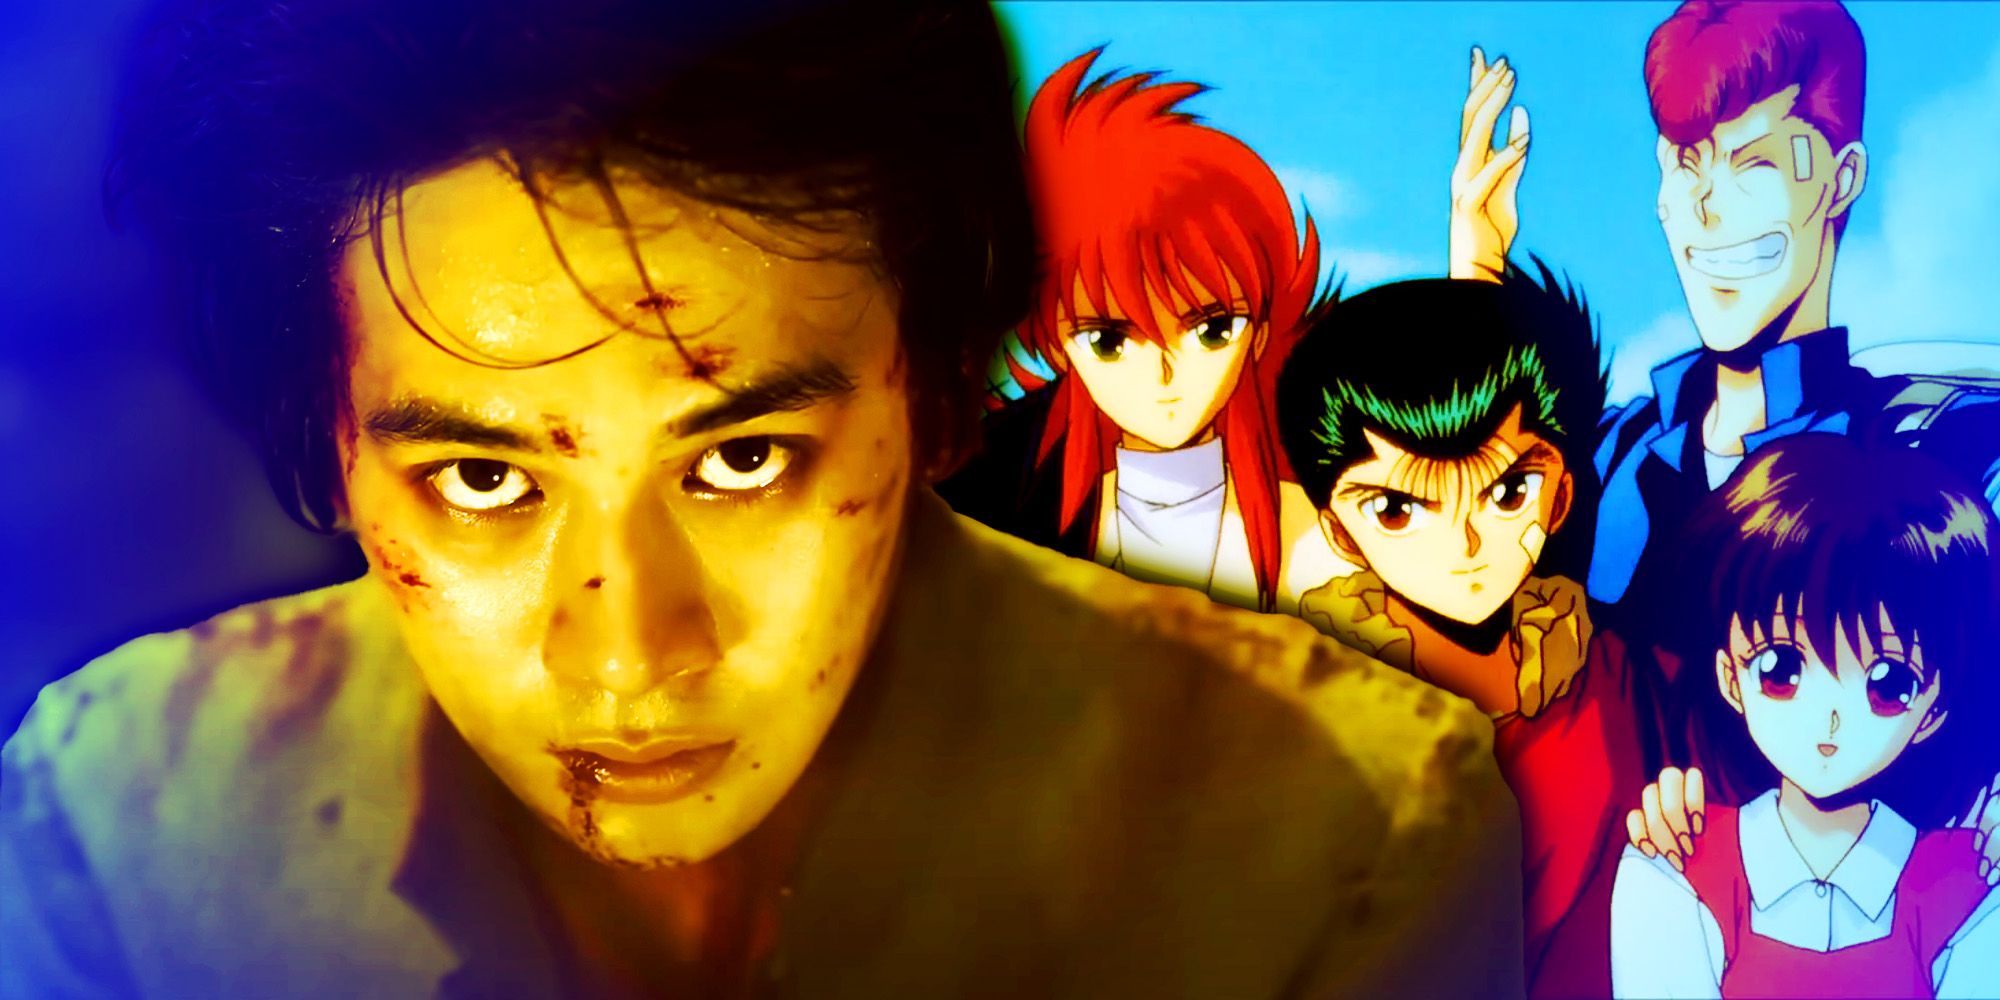 Netflix's newest anime live-action adaptation is Yu Yu Hakusho